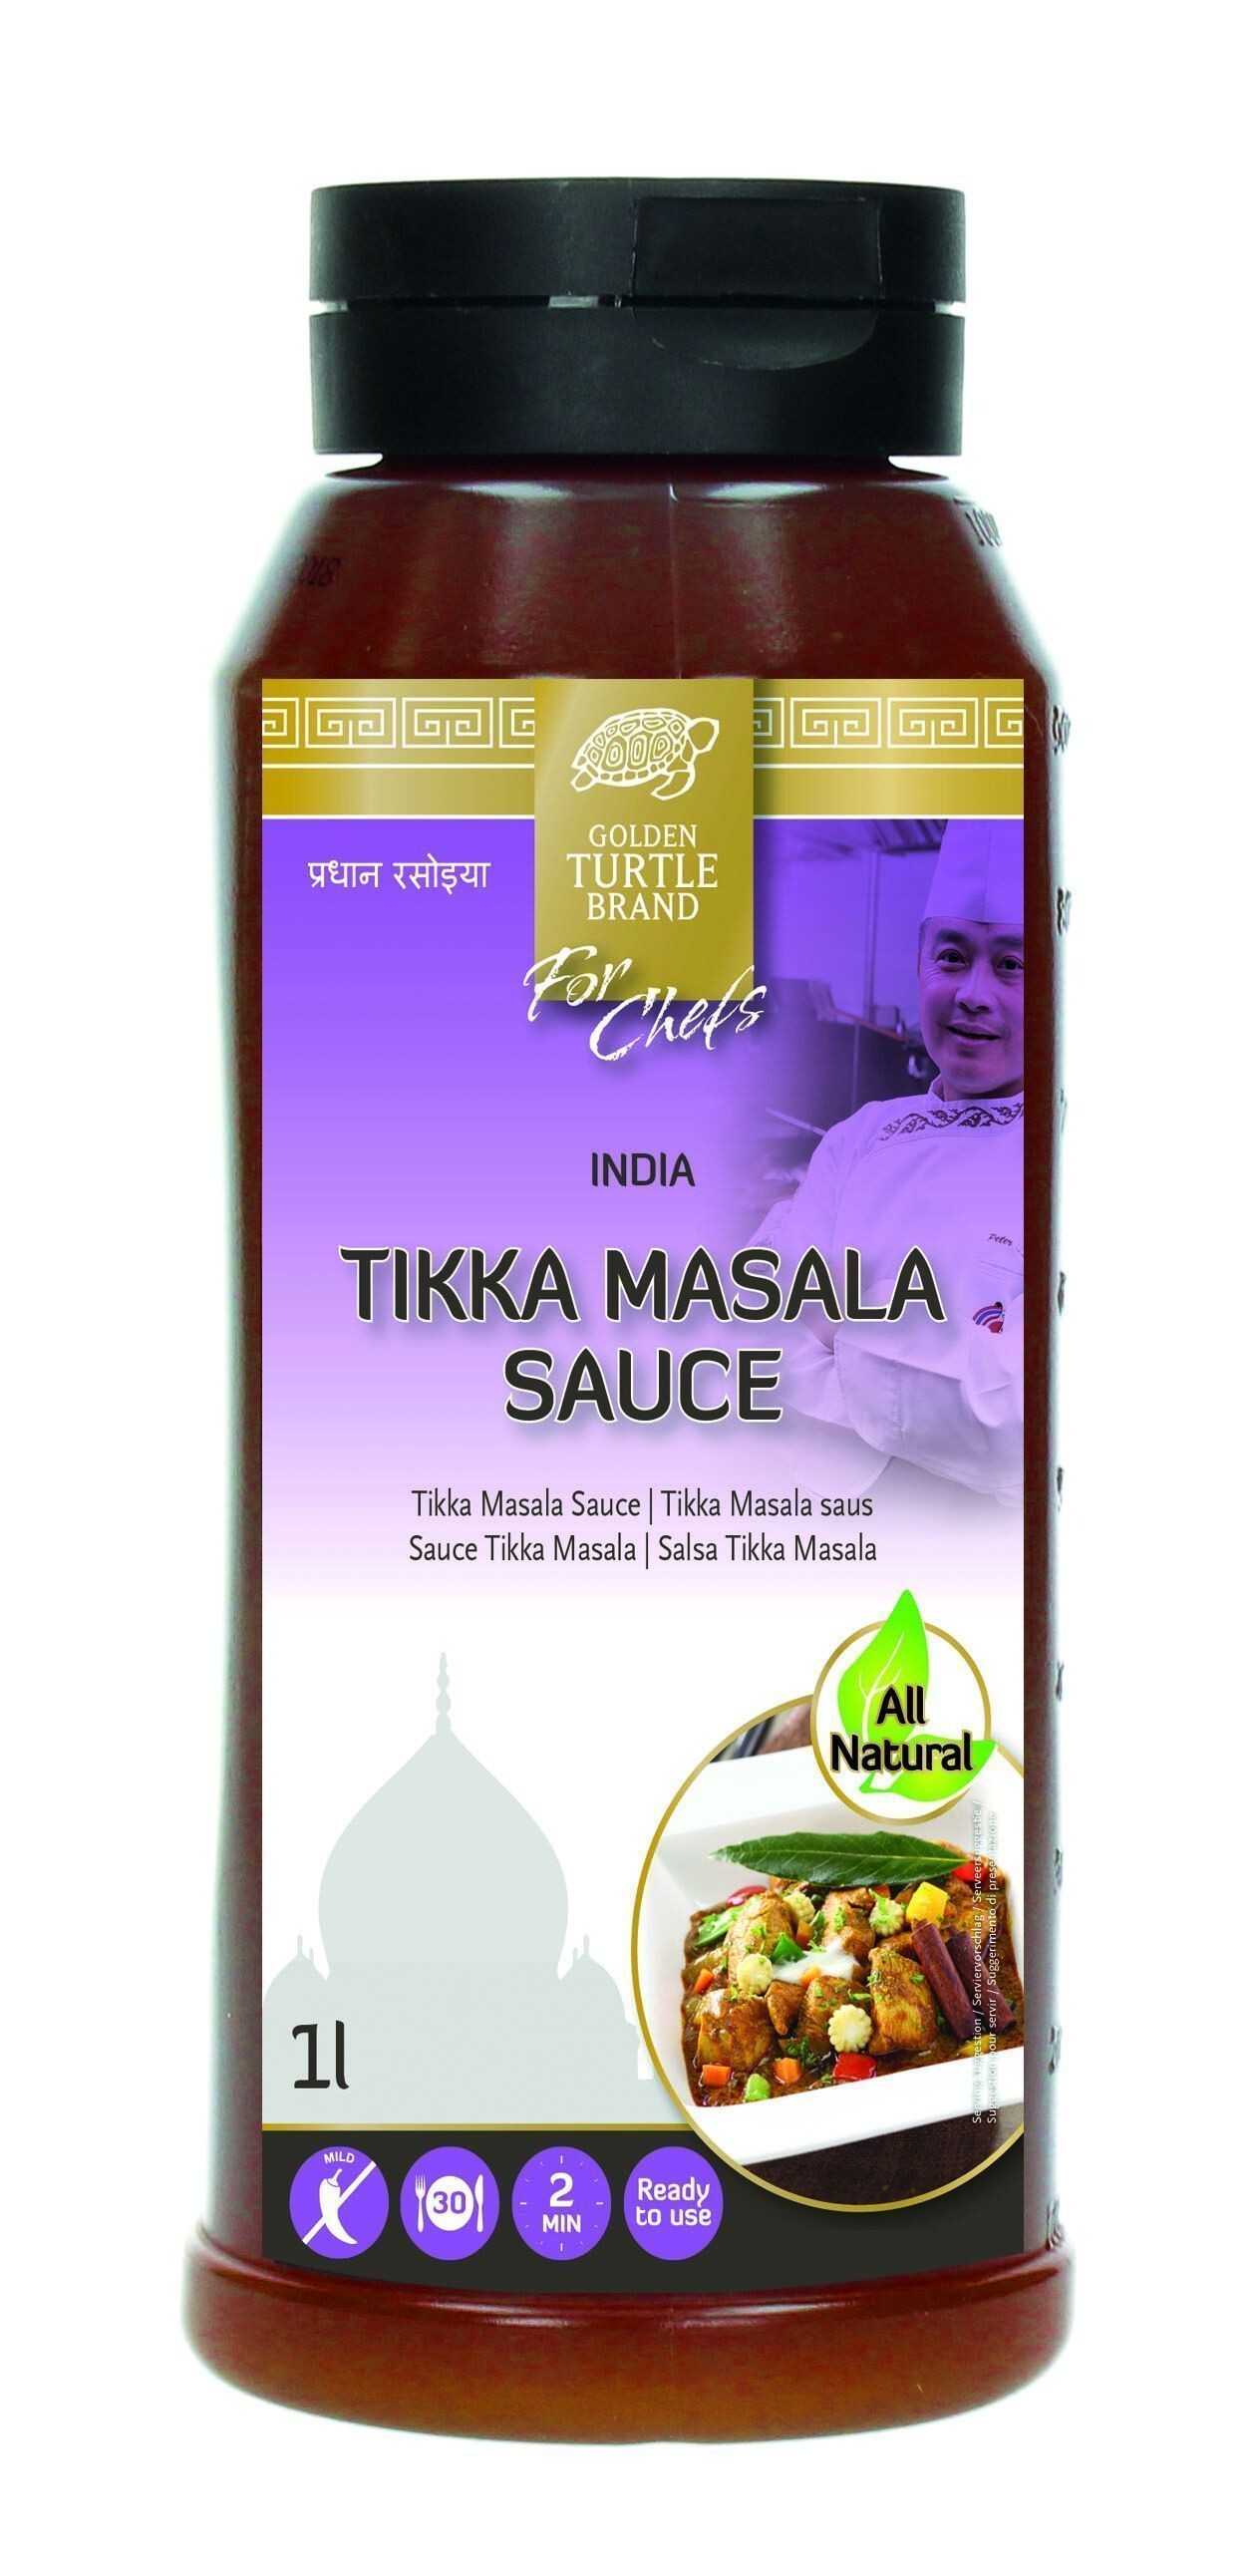 Sauce for Tikka Masala 1L Golden Turtle Brand for chefs